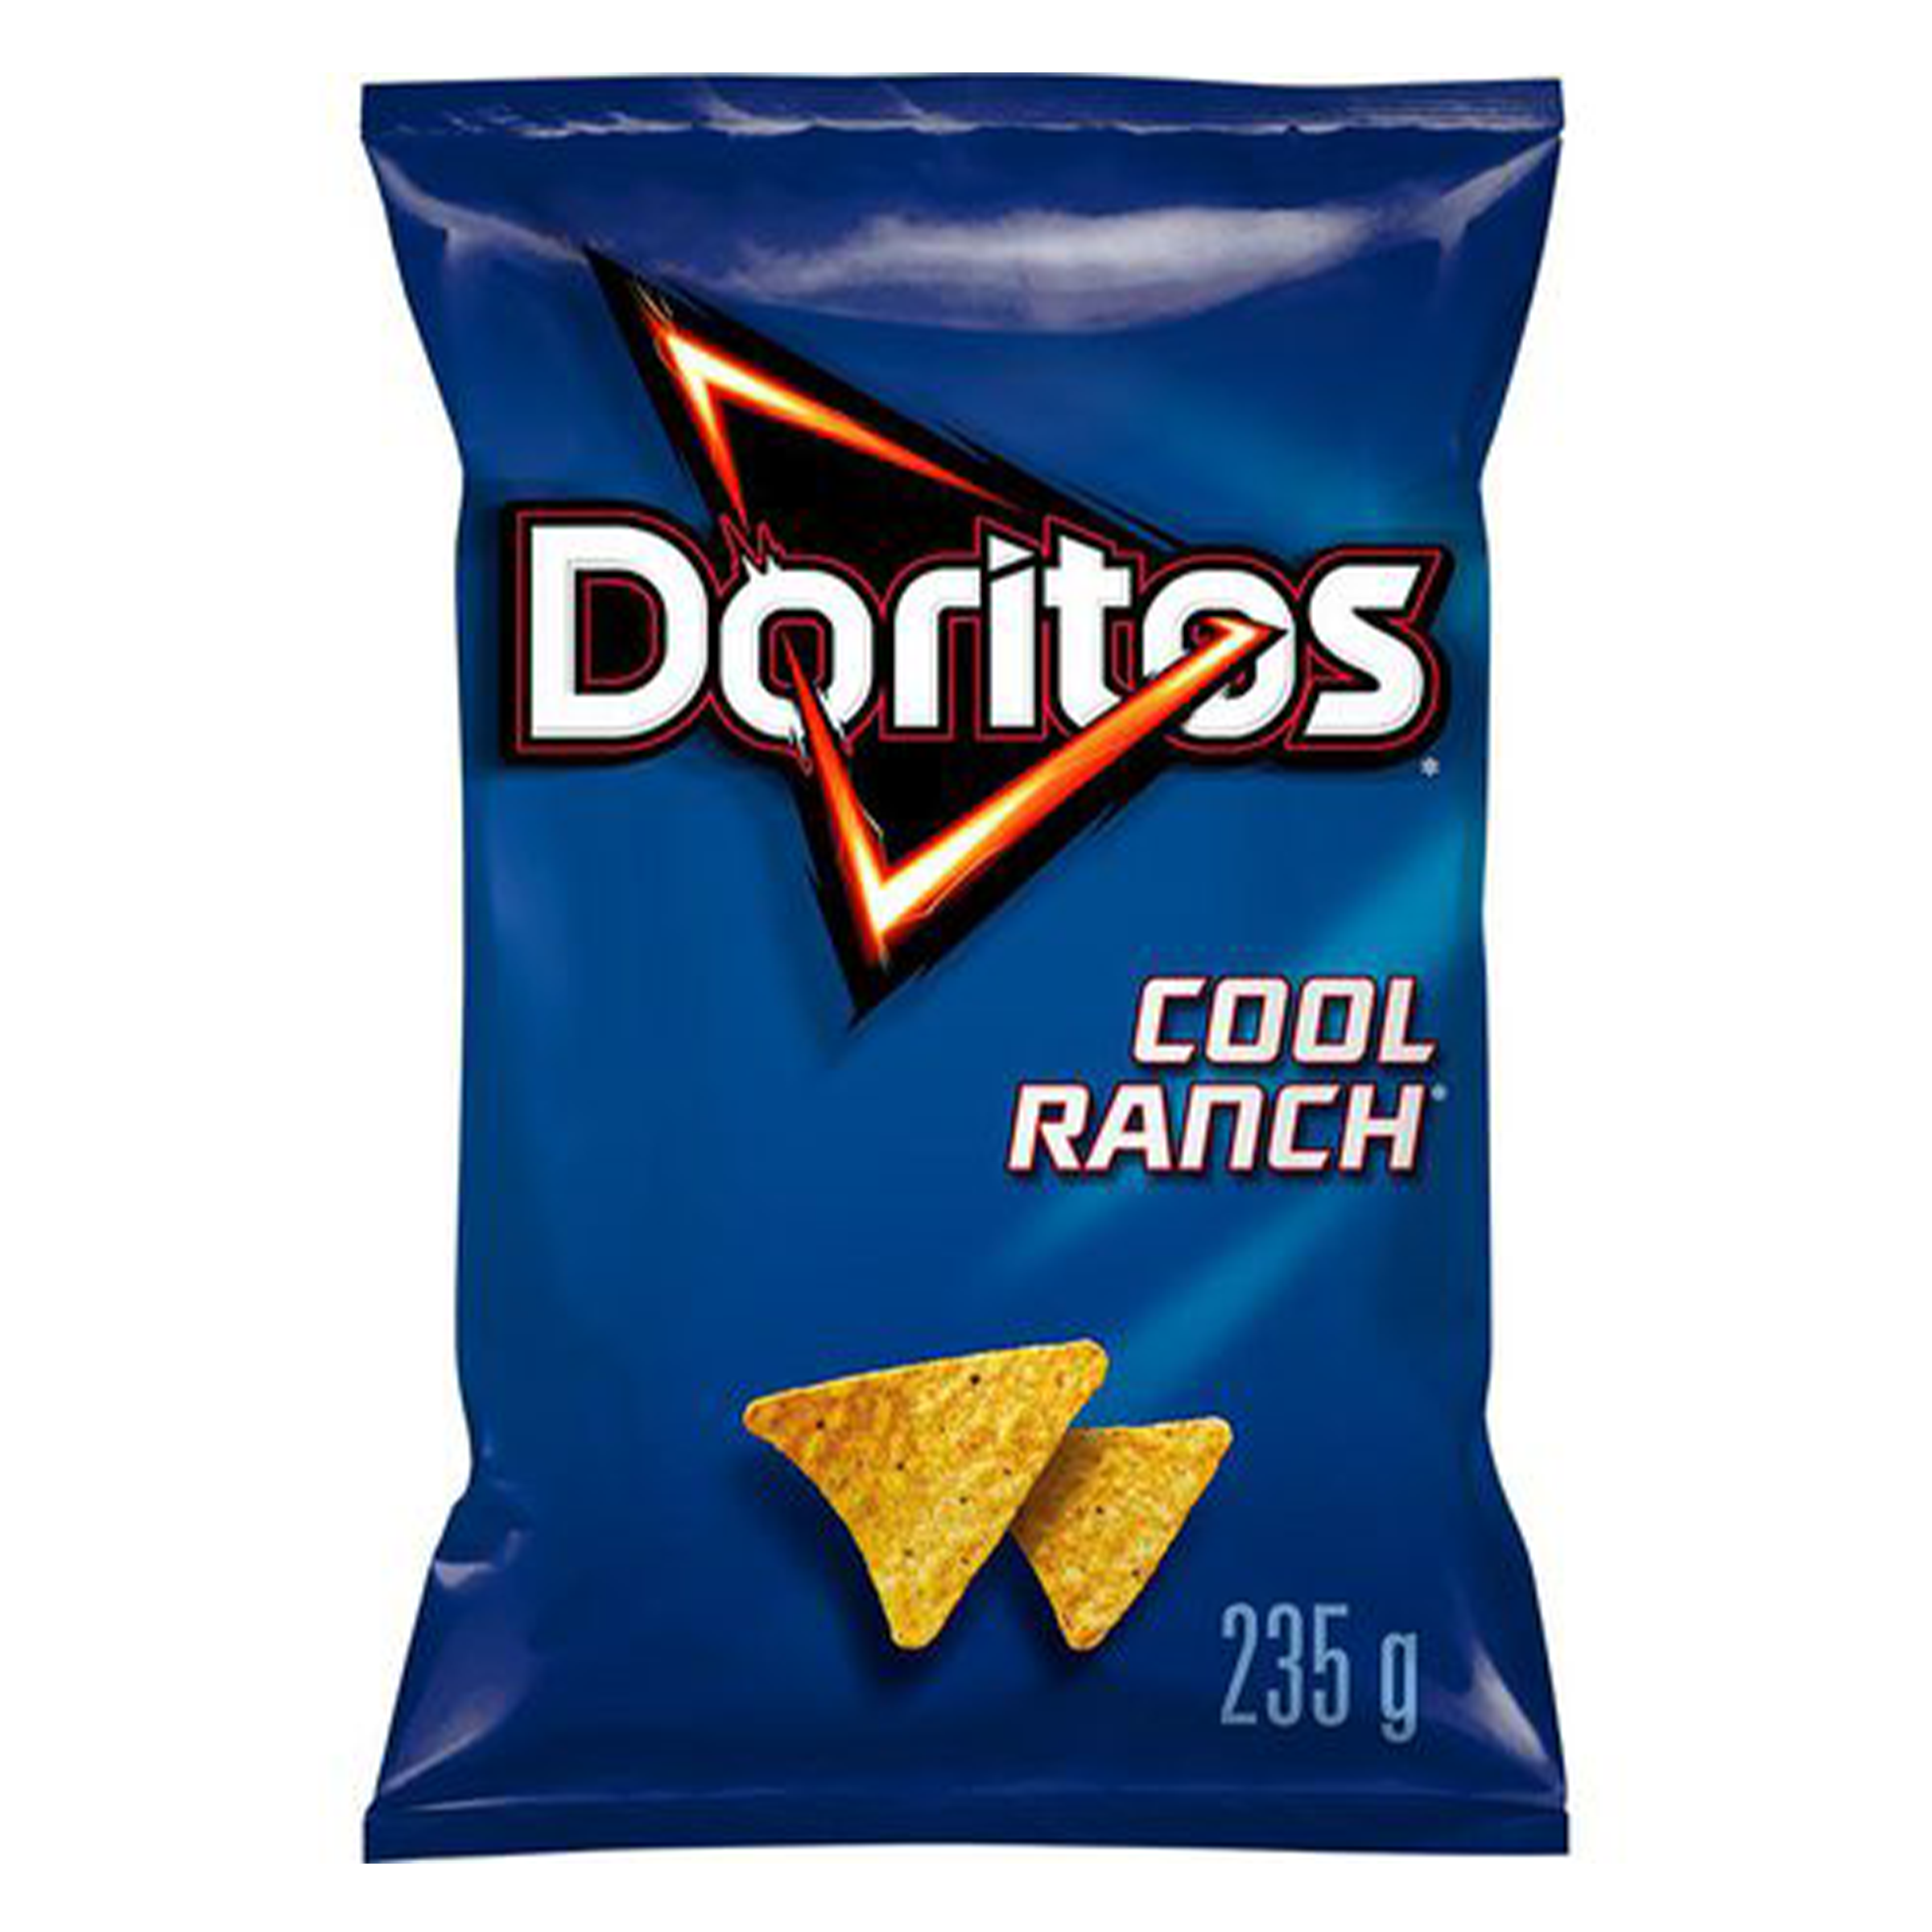 Doritos - Cool Ranch